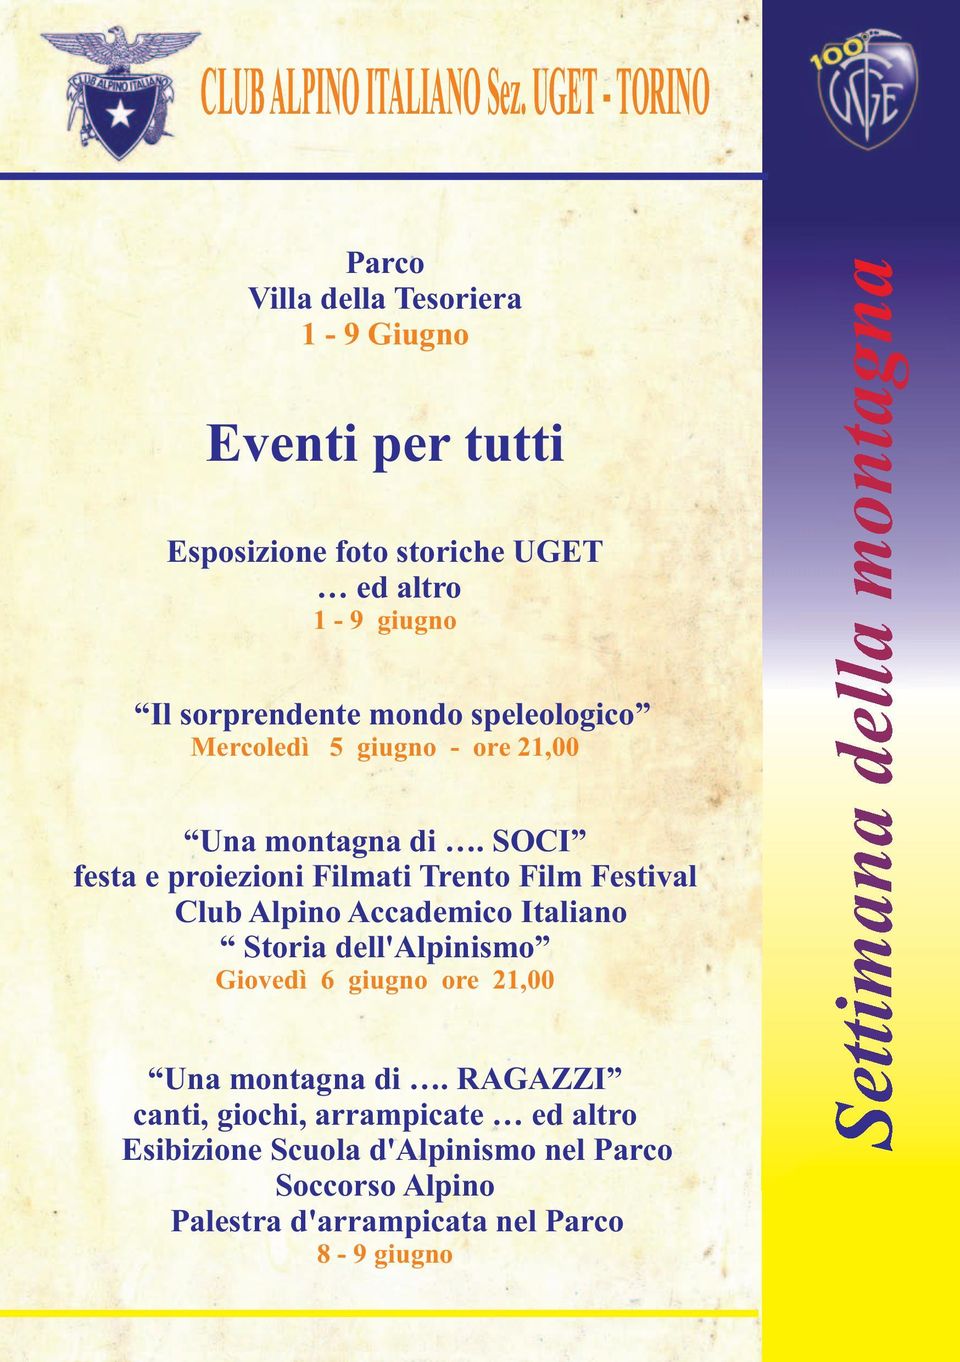 SOCI festa e proiezioni Filmati Trento Film Festival Club Alpino Accademico Italiano Storia dell'alpinismo Giovedì 6 giugno